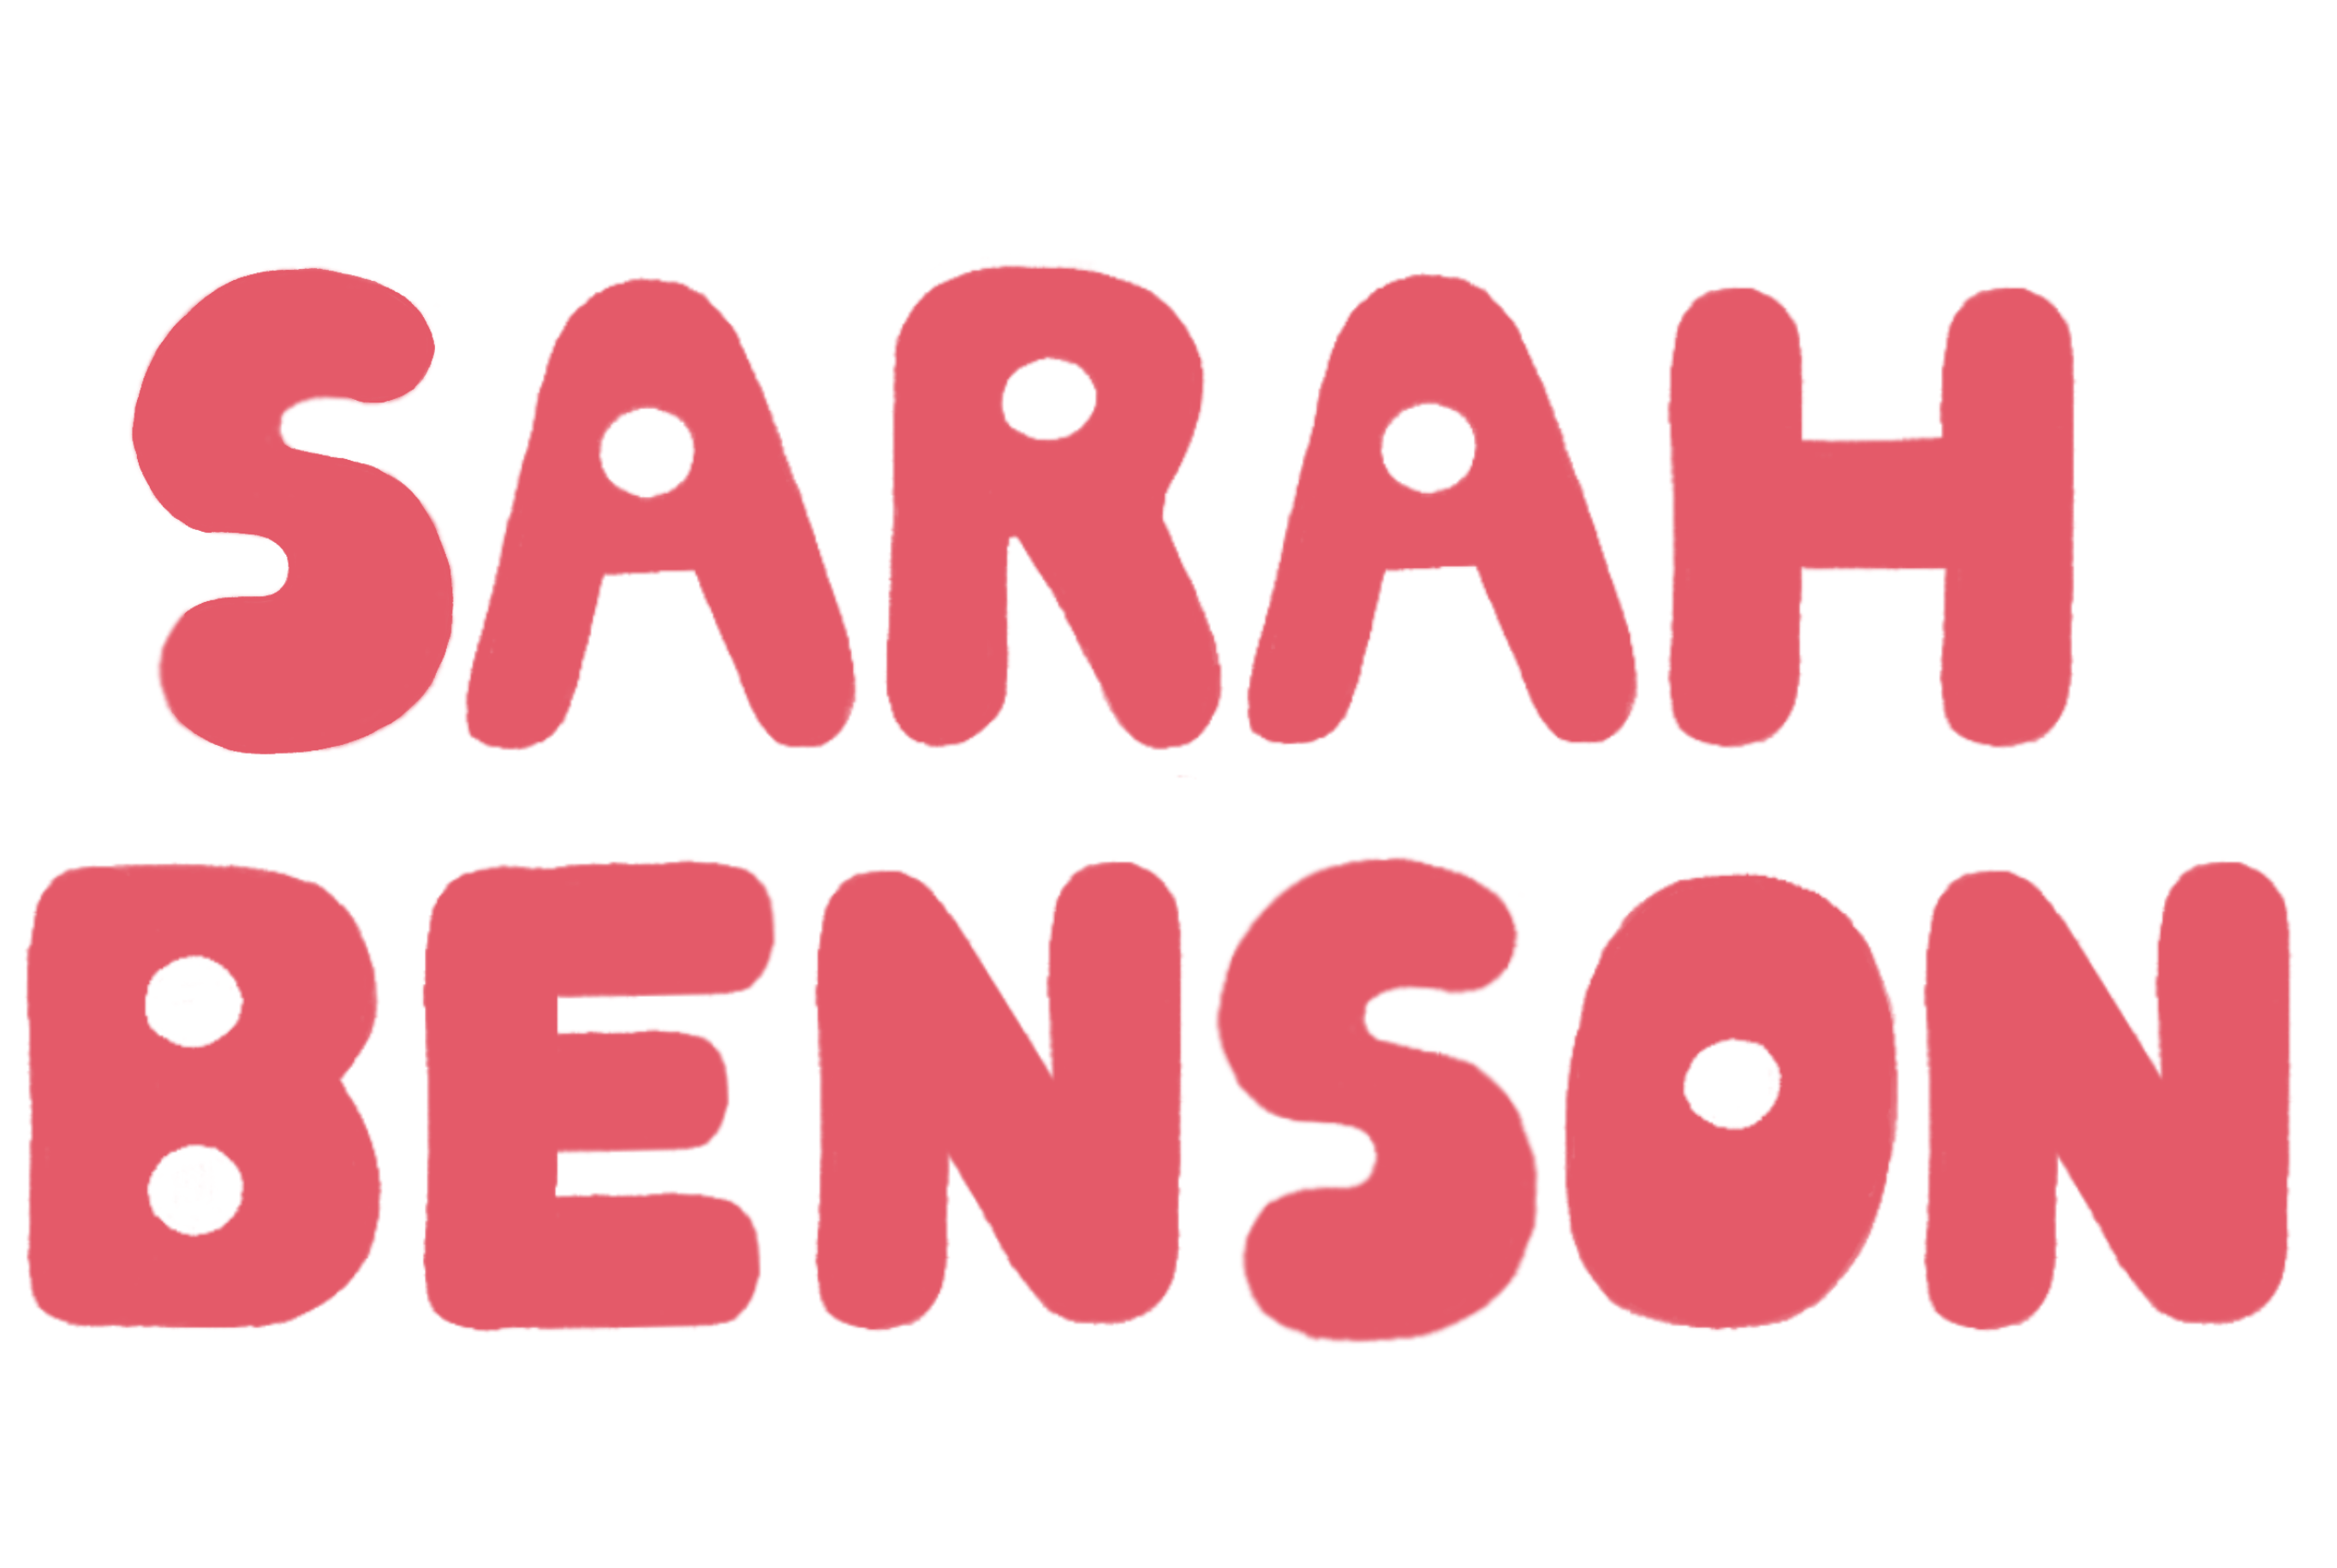 Sarah Benson